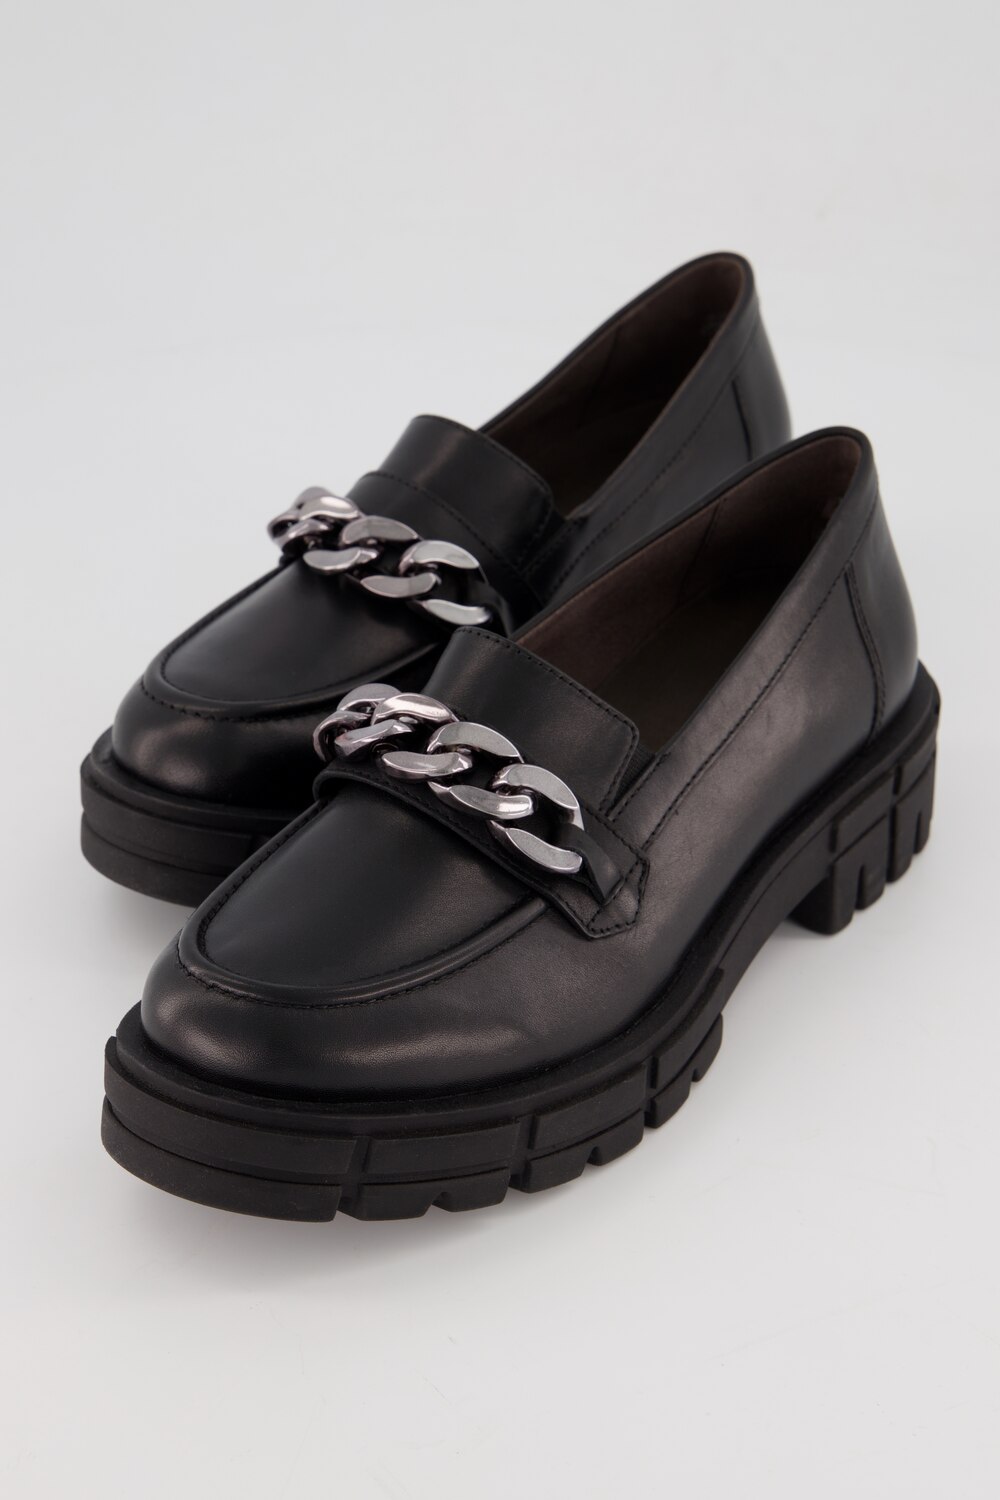 Grote Maten Caprice loafers, Dames, zwart, Maat: 37, Leer/Synthetische vezels, Ulla Popken